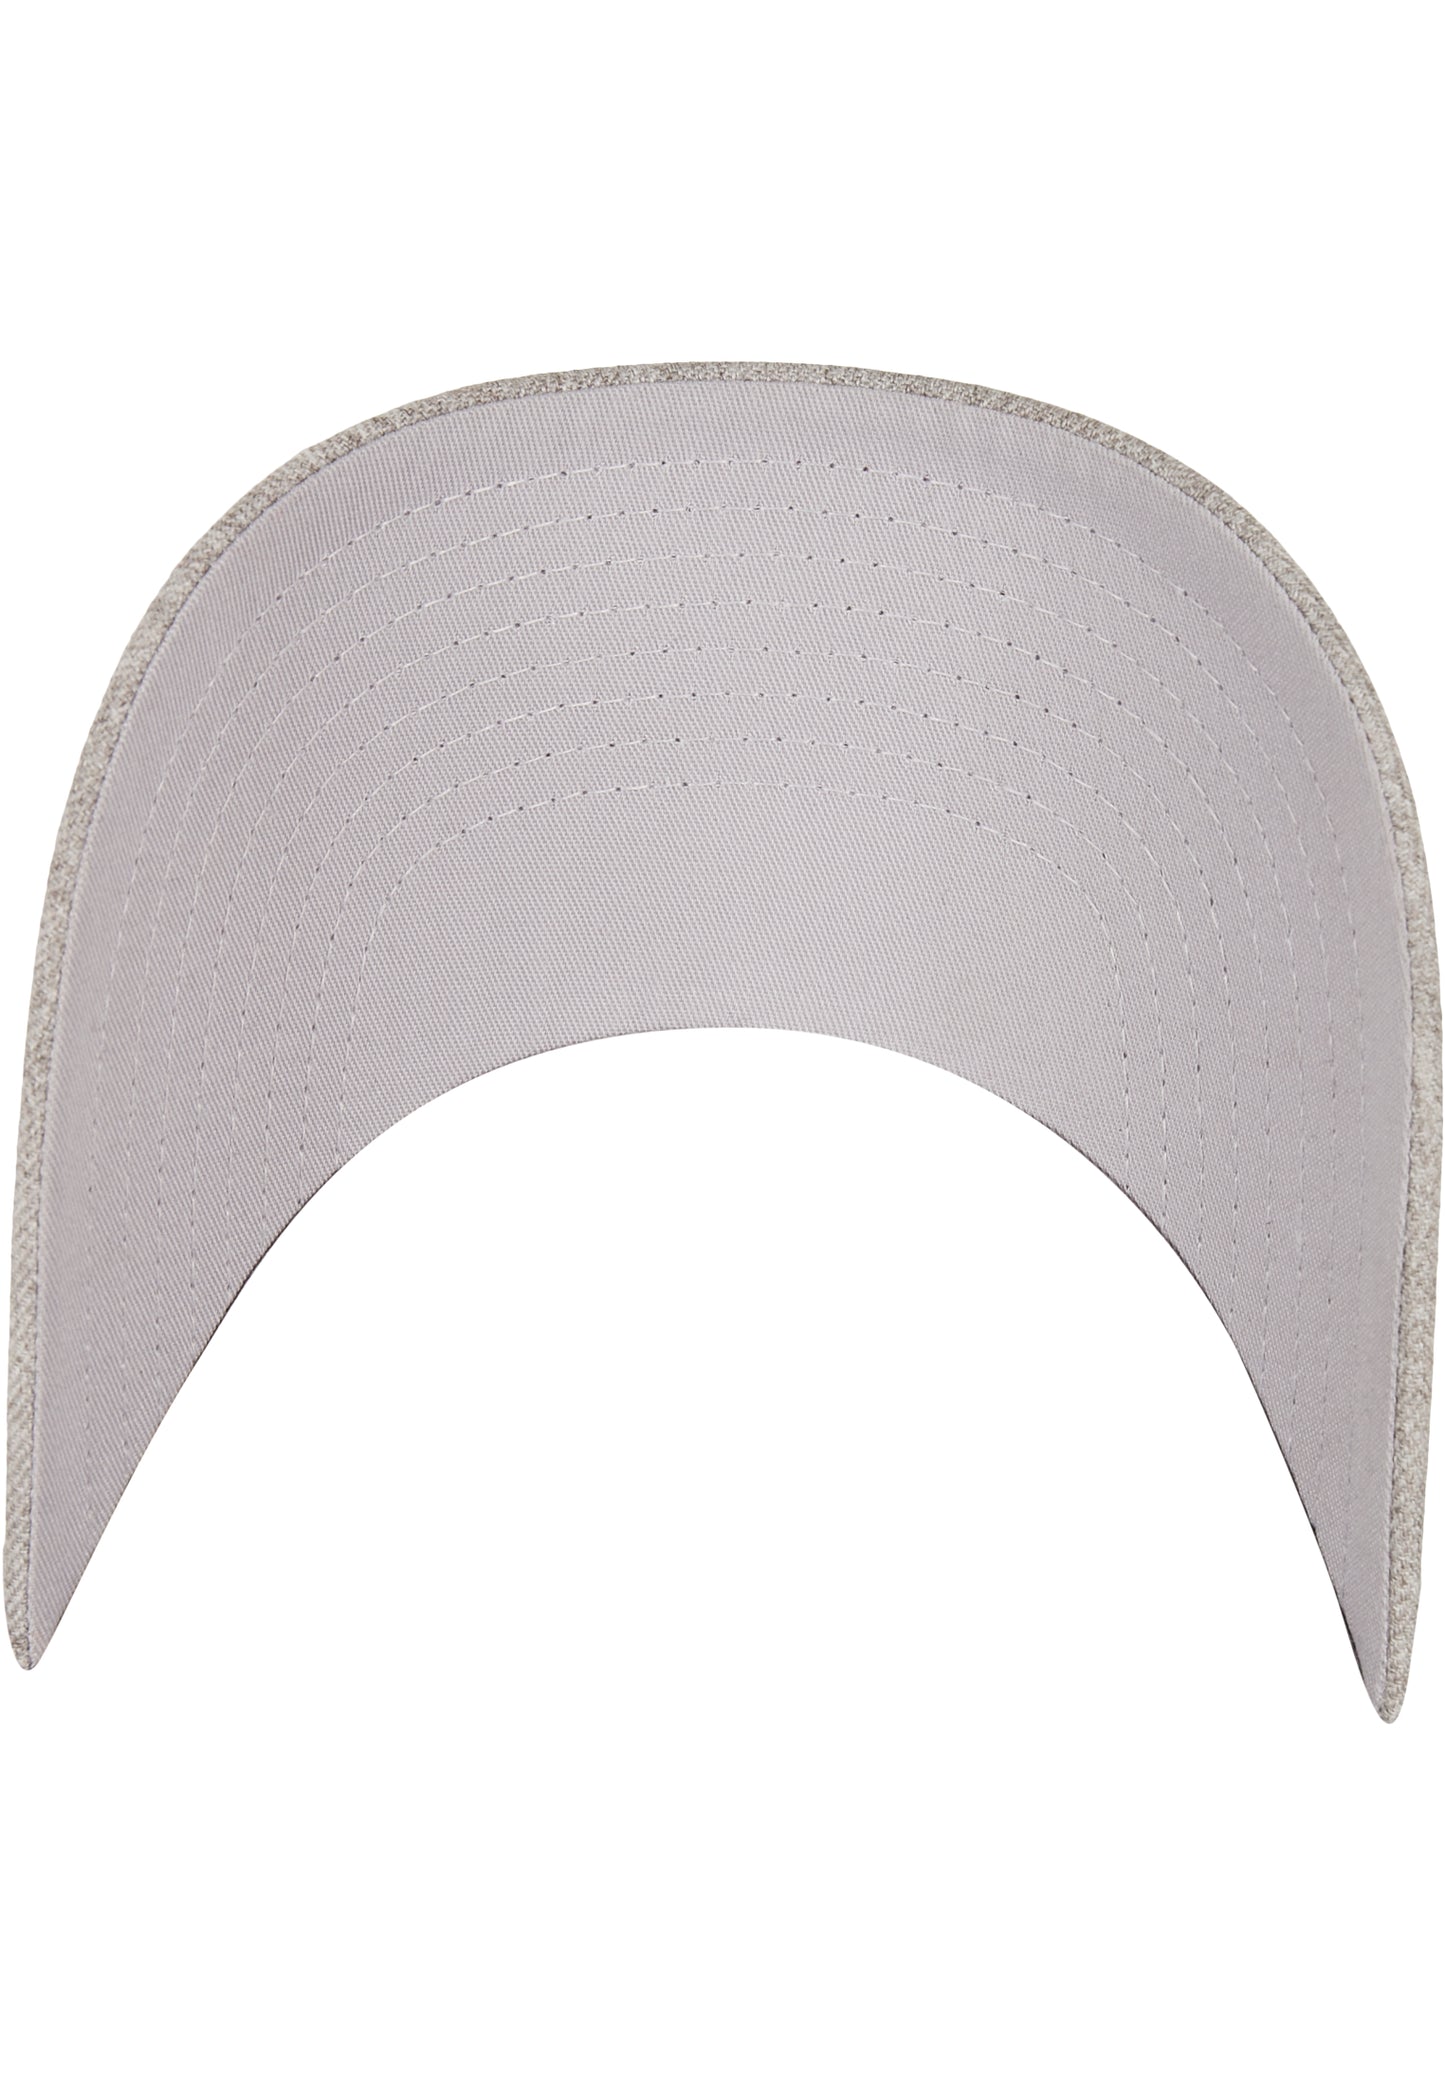 Premium Curved Visor Snapback Cap